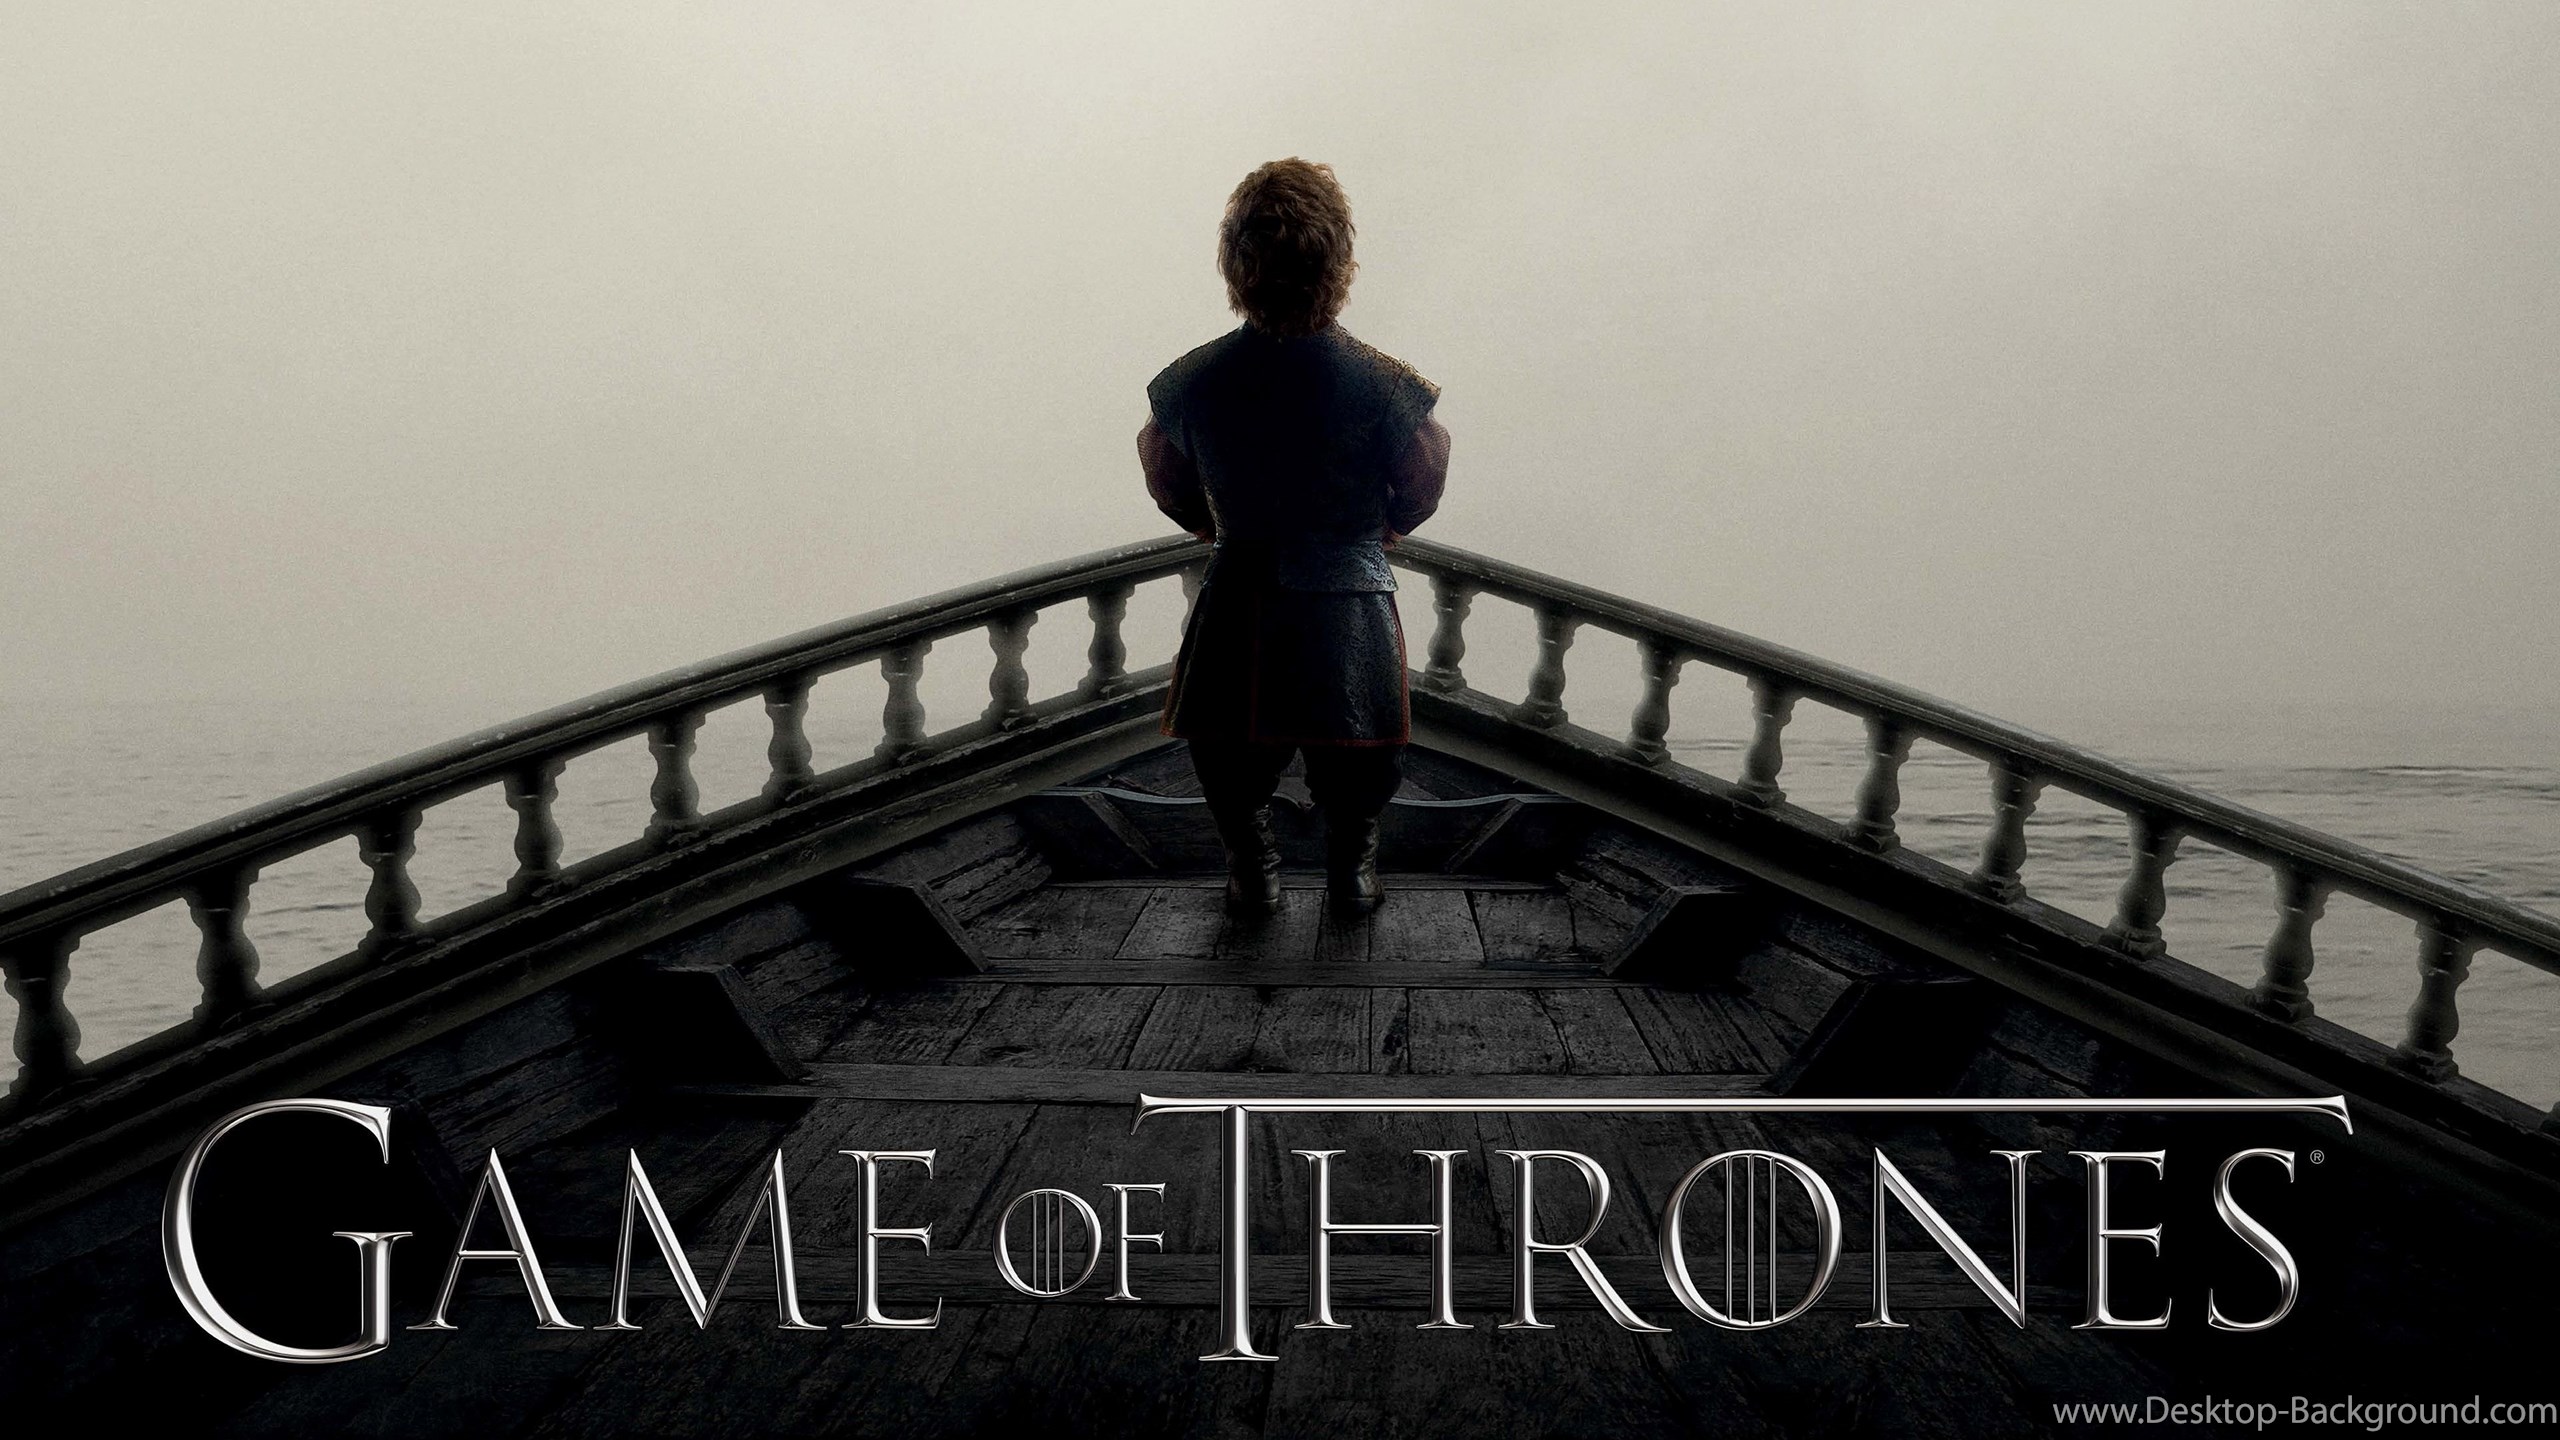 Popular - Imagenes De Game Of Thrones 4k , HD Wallpaper & Backgrounds